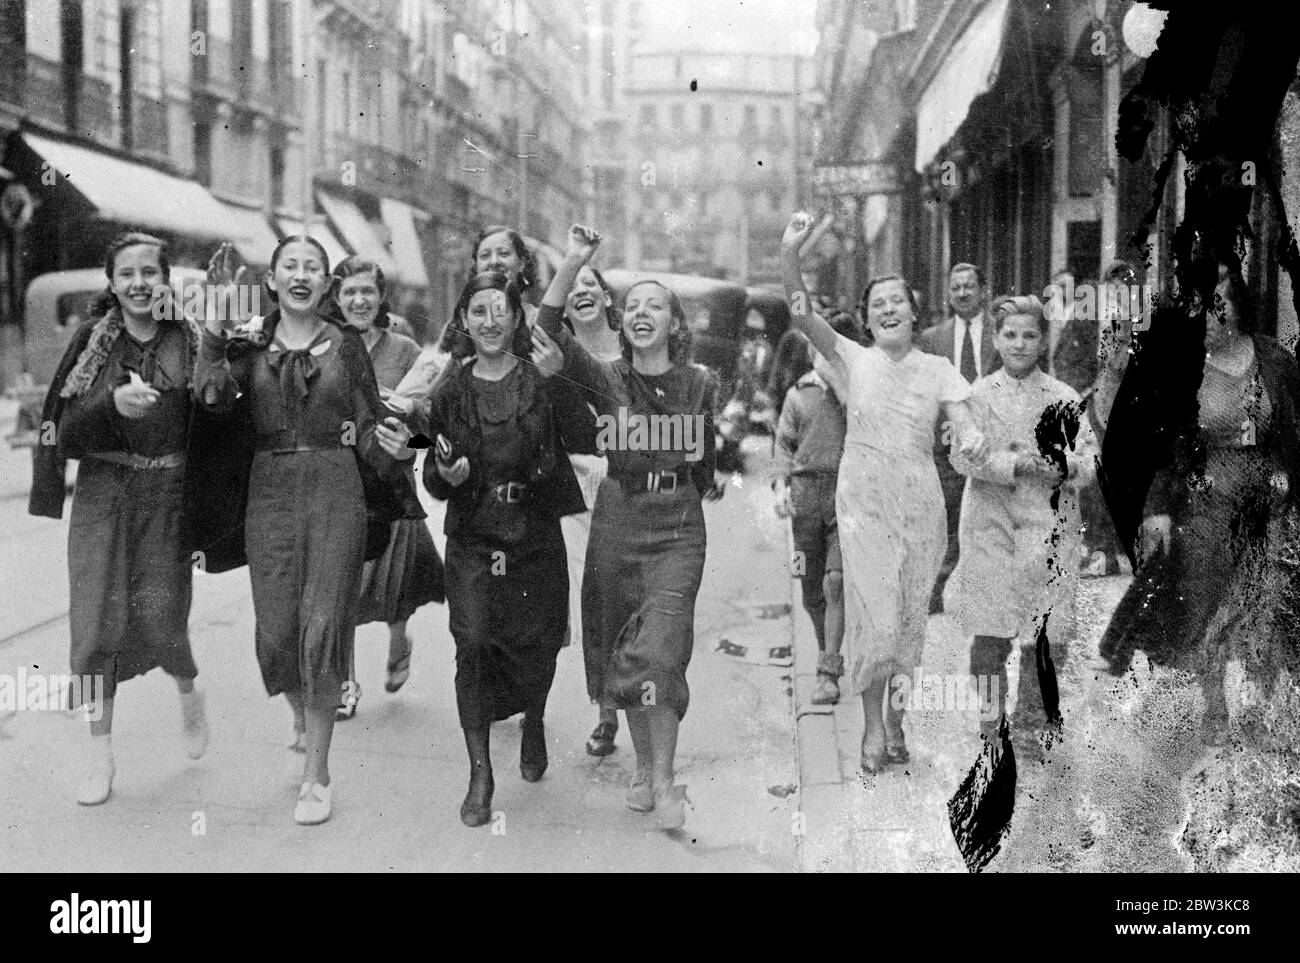 Mädchen Dressmaker kommen Streikenden in Madrid, Parade durch die Stadt fordern allgemeine Stoppage. Mädchen in der Mühle und Schneiderei in Madrid engagiert haben sich dem Streik movememnt, die das Land fegen und ist mit Arbeitnehmern in Branchen so weit entfernt wie Kohlebergbau, Landwirtschaft und sogar Stierkämpfe beteiligt, und hat bereits viele Menschenleben gekostet. Die Mädchen marschierten durch die Straßen der Stadt und riefen zu einer Forderung auf, dass alle Arbeiter in den Schneiderhandwerken dem Streik beitreten sollten. Foto zeigt, schreiende Mädchen Müllers Paraden durch Madrid. 18 Juni 1936 Stockfoto